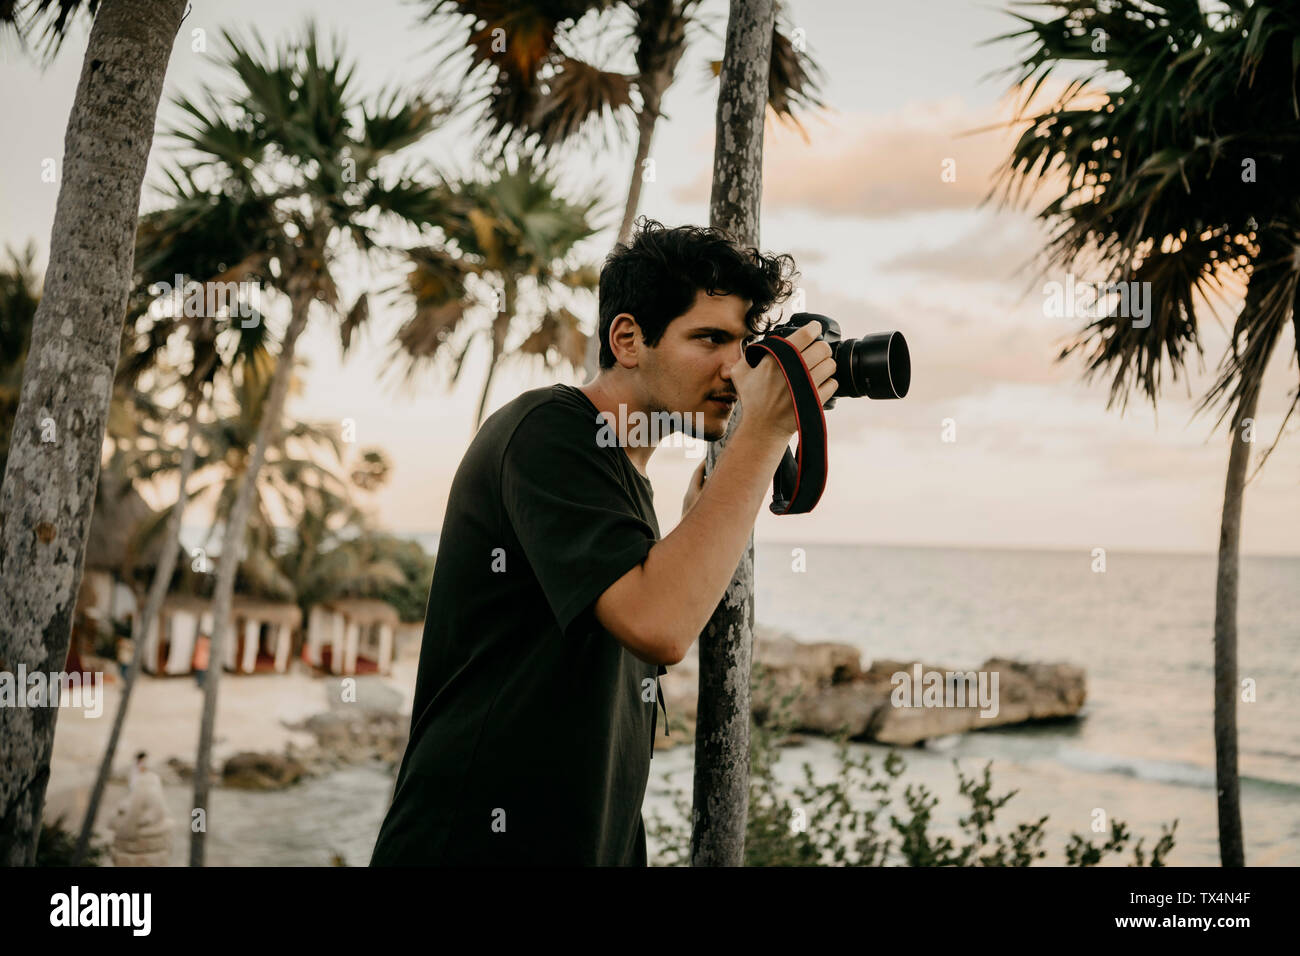 Le Mexique, Quintana Roo, Tulum, jeune homme à prendre des photos sur la plage Banque D'Images